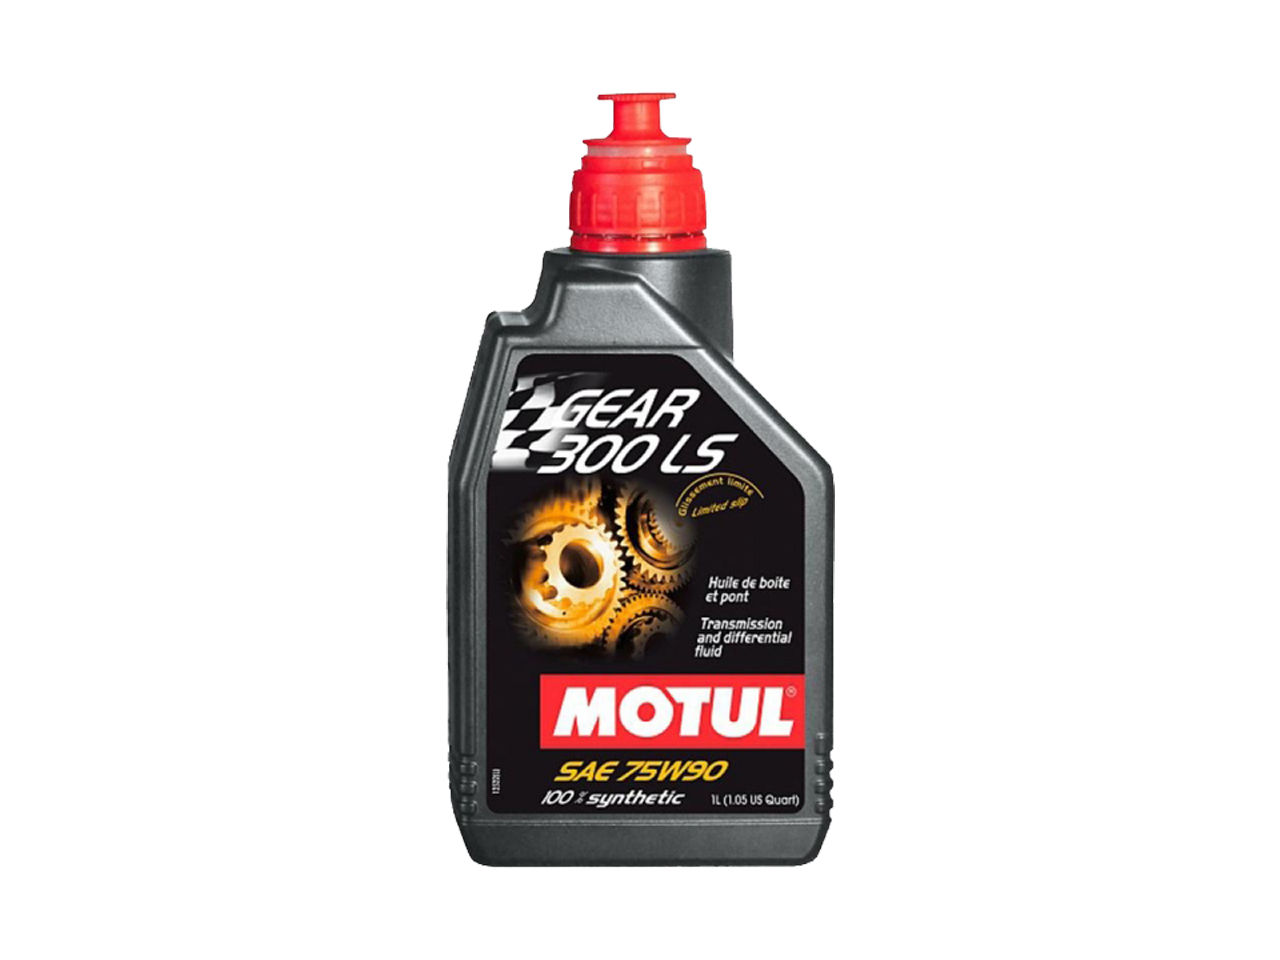 Купить Трансмиссионное масло Motul Gear 300 LS